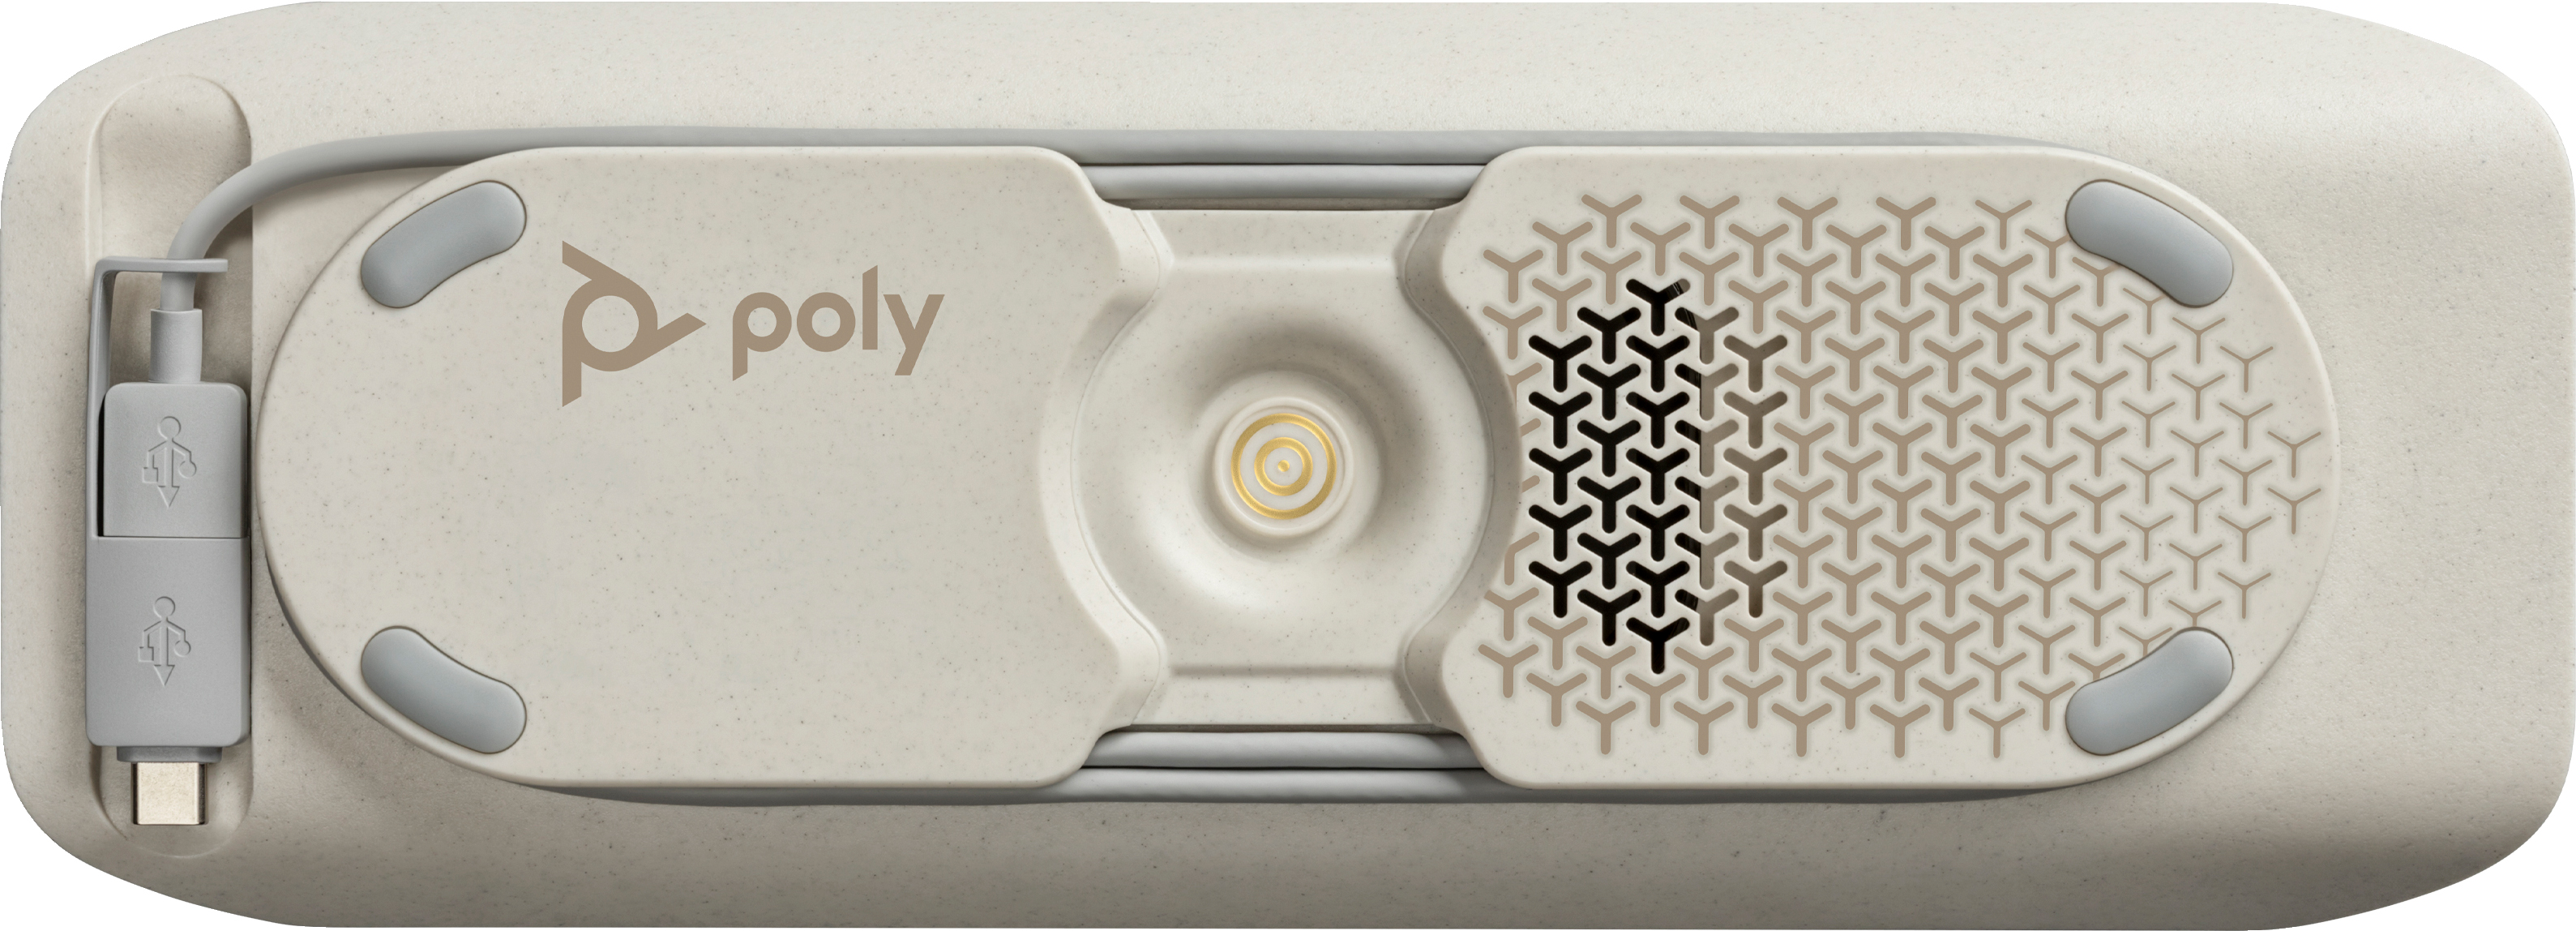 Cпикерфон Poly Sync 40+ с адаптером BT700A, USB-A, USB-C, Bluetooth, серый фото 5